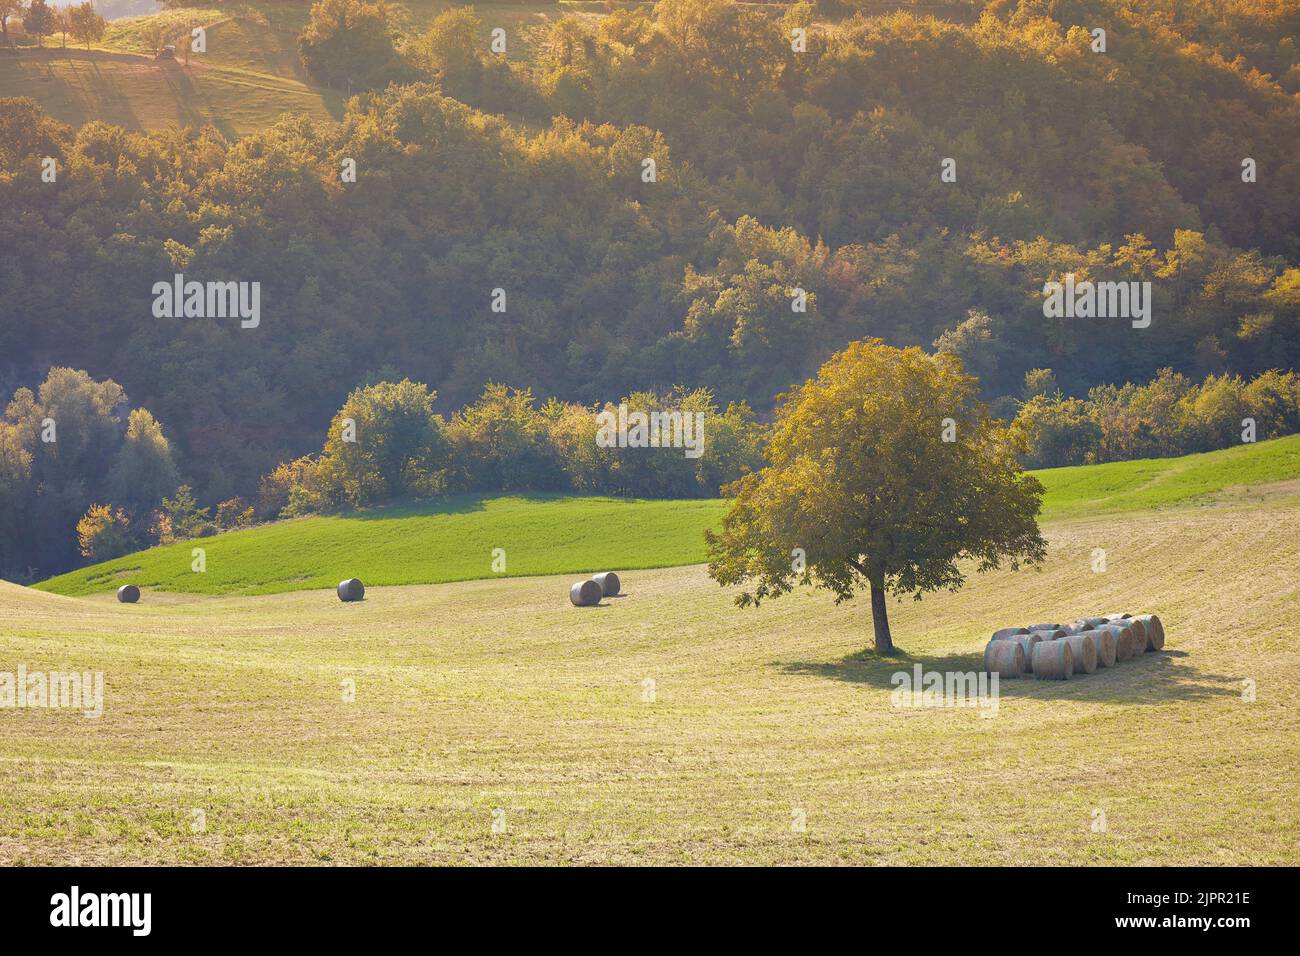 Un arbre isolé avec des balles de foin au coucher du soleil dans un champ des collines Appennino Reggiano, Casina, Reggio Emilia, Emilia Romagna, Italie. Banque D'Images